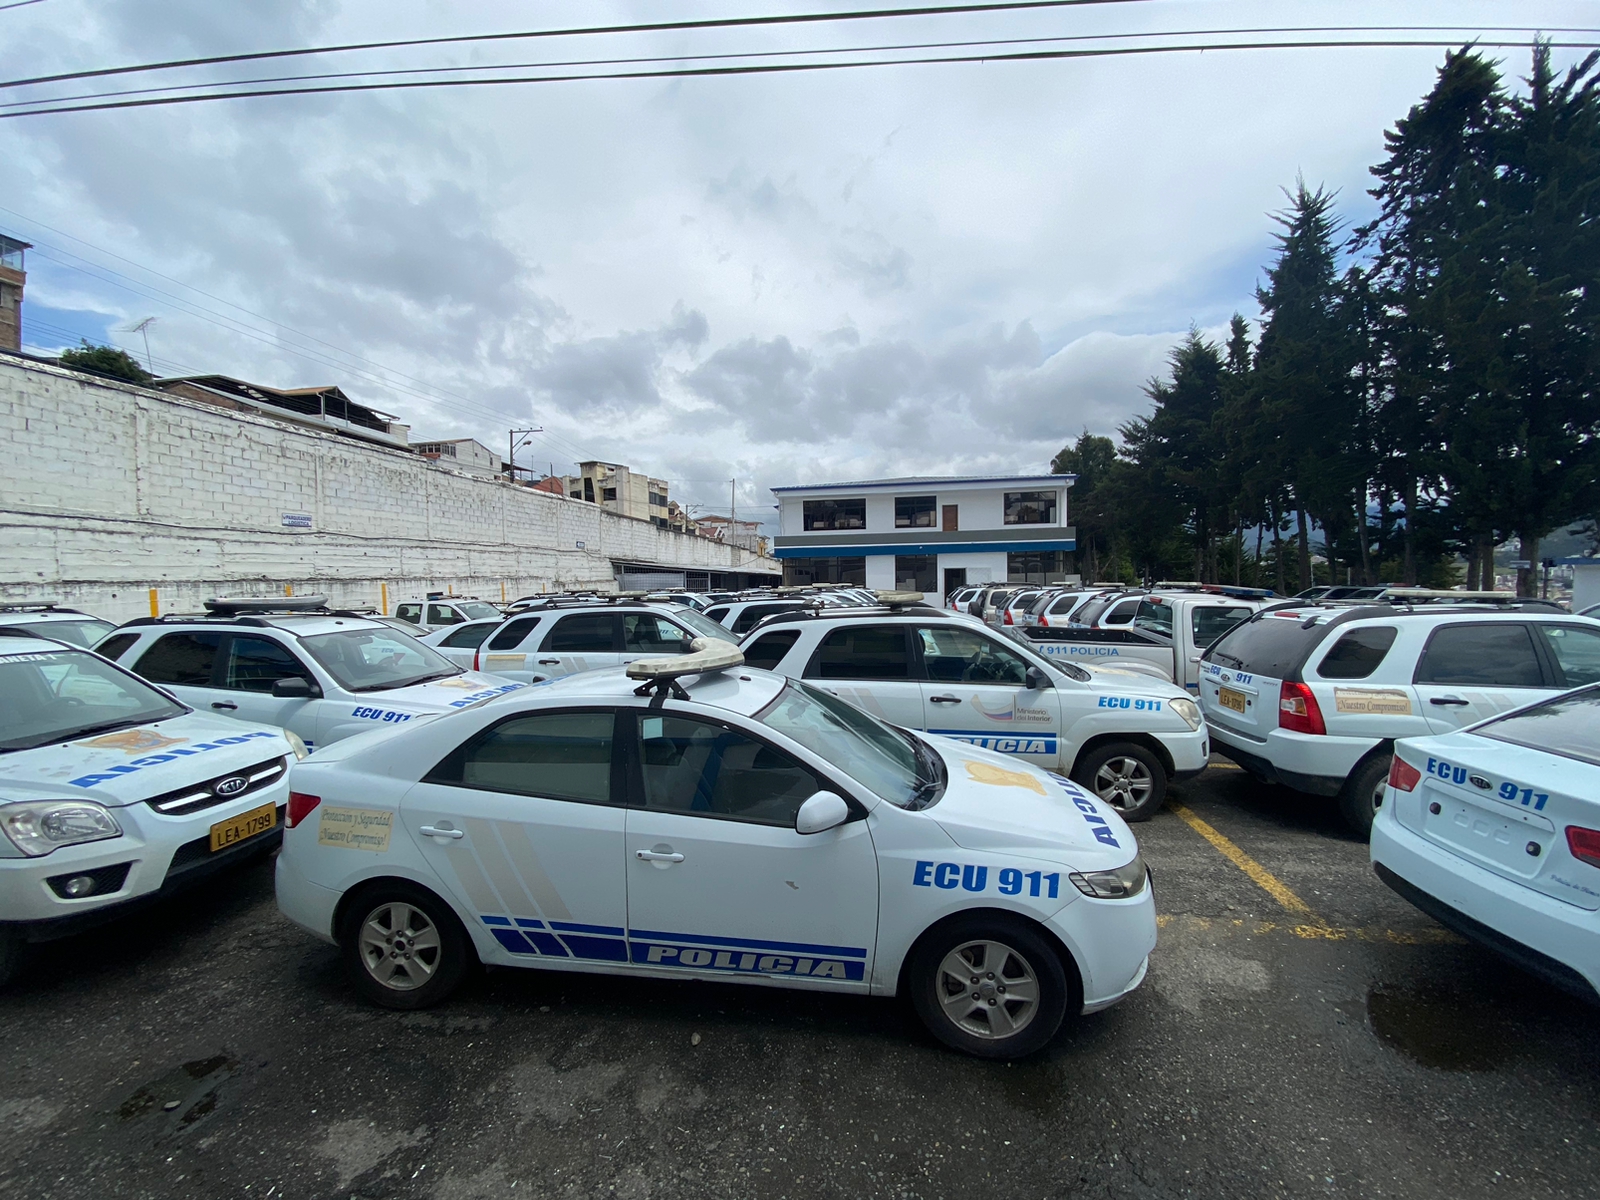 Inseguridad crece en Loja y carros de policía sin funcionar